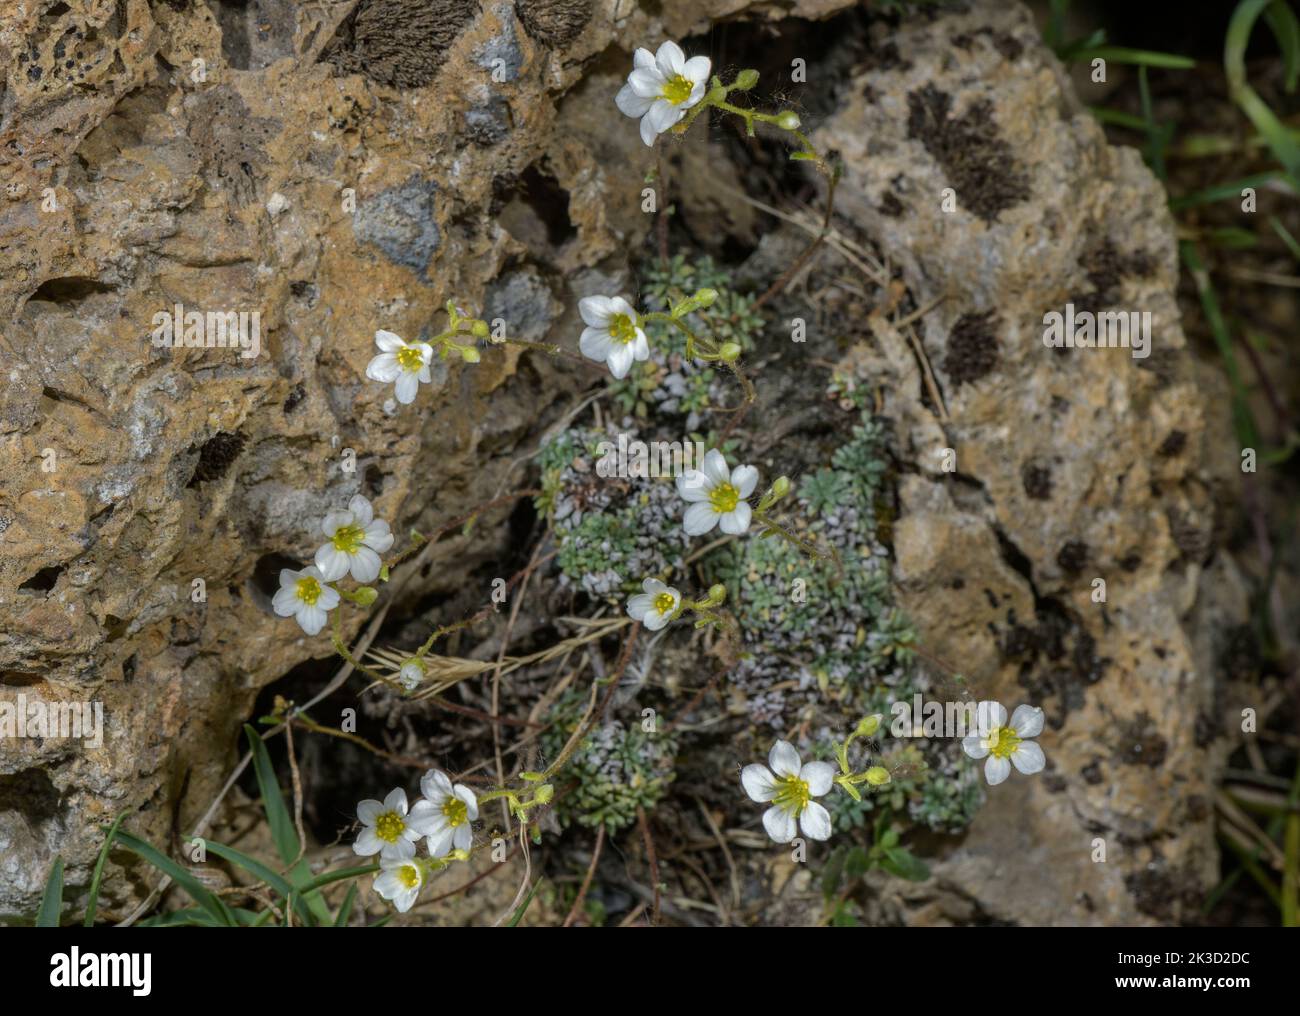 Dolomites saxifrage, Saxifraga squarrosa in flower on cliff. Stock Photo